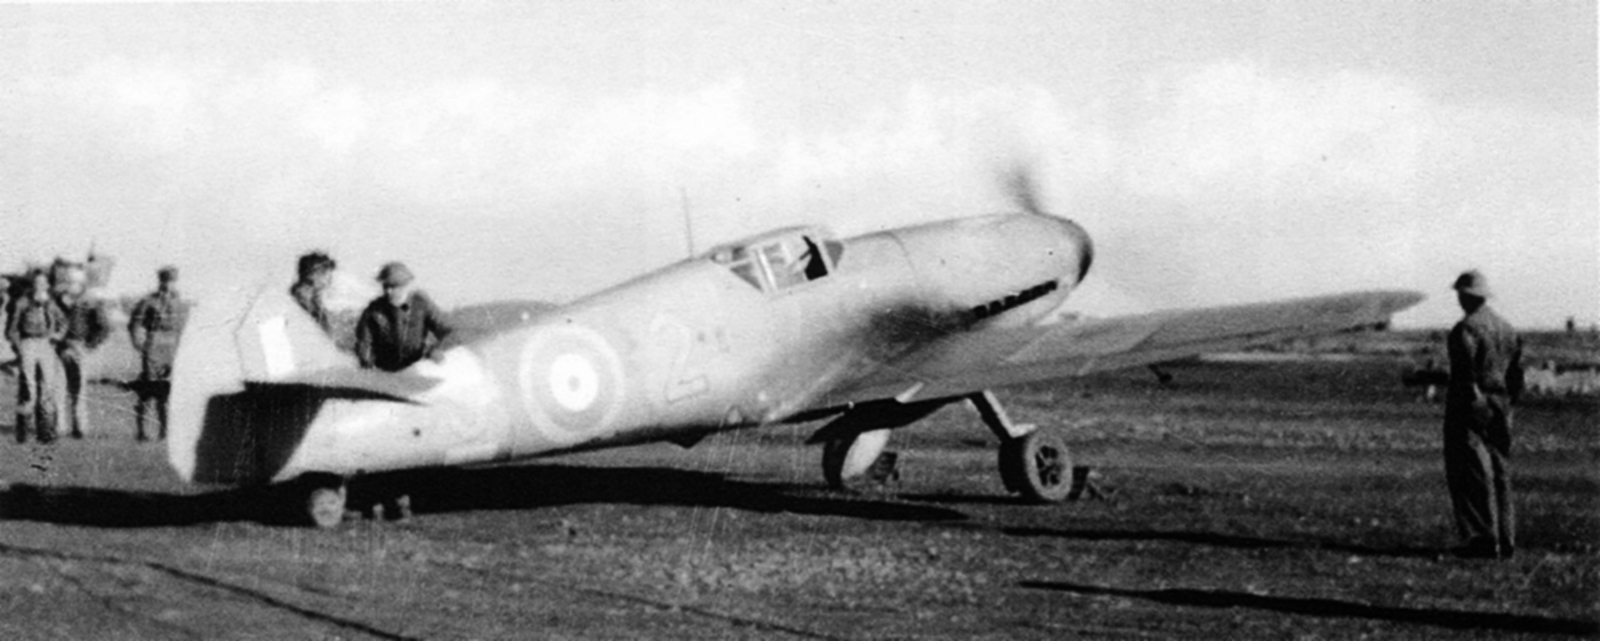 Messerschmitt Bf 109F4Trop 9.JG27 Yellow 2 captured at Derna Egypt 1942 01